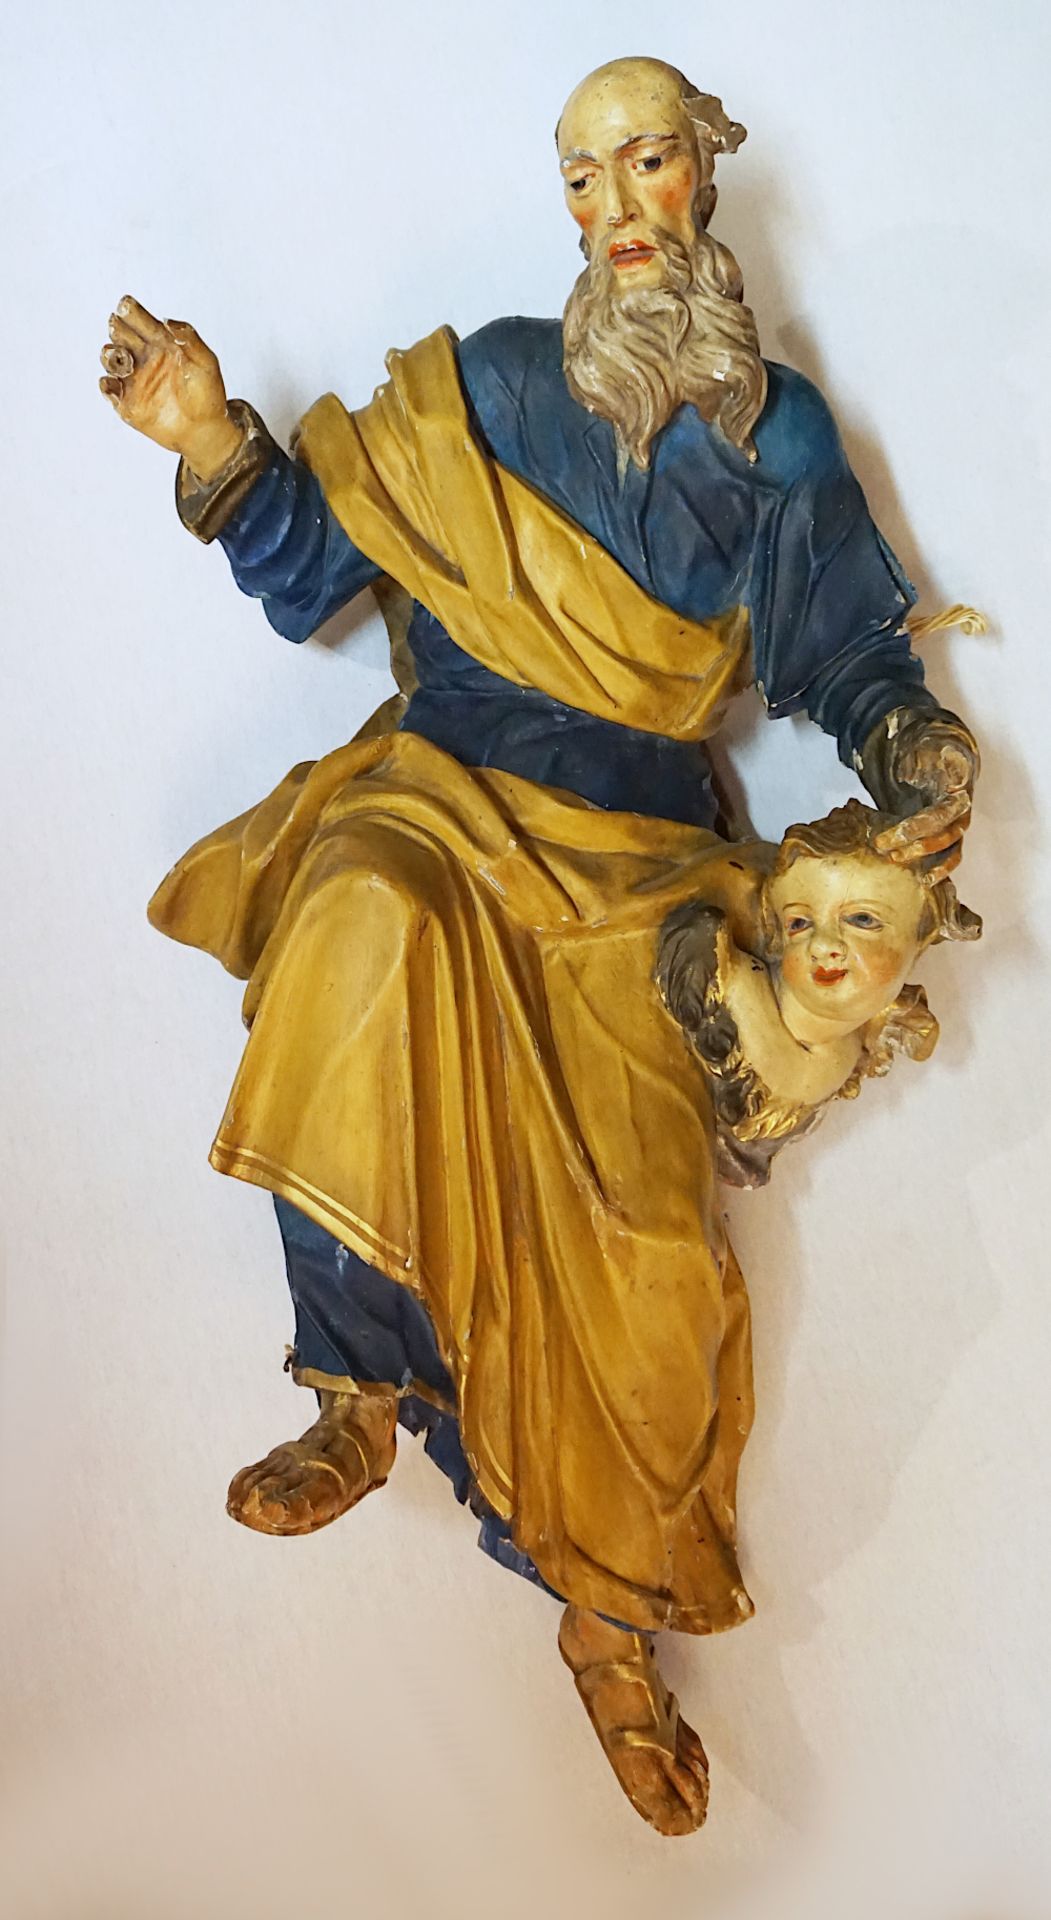 1 Holzfigur/Wandapplike farbig gefasst wohl 19. Jh. "Heiliger Paulus von Tarsus" H ca. 95cm